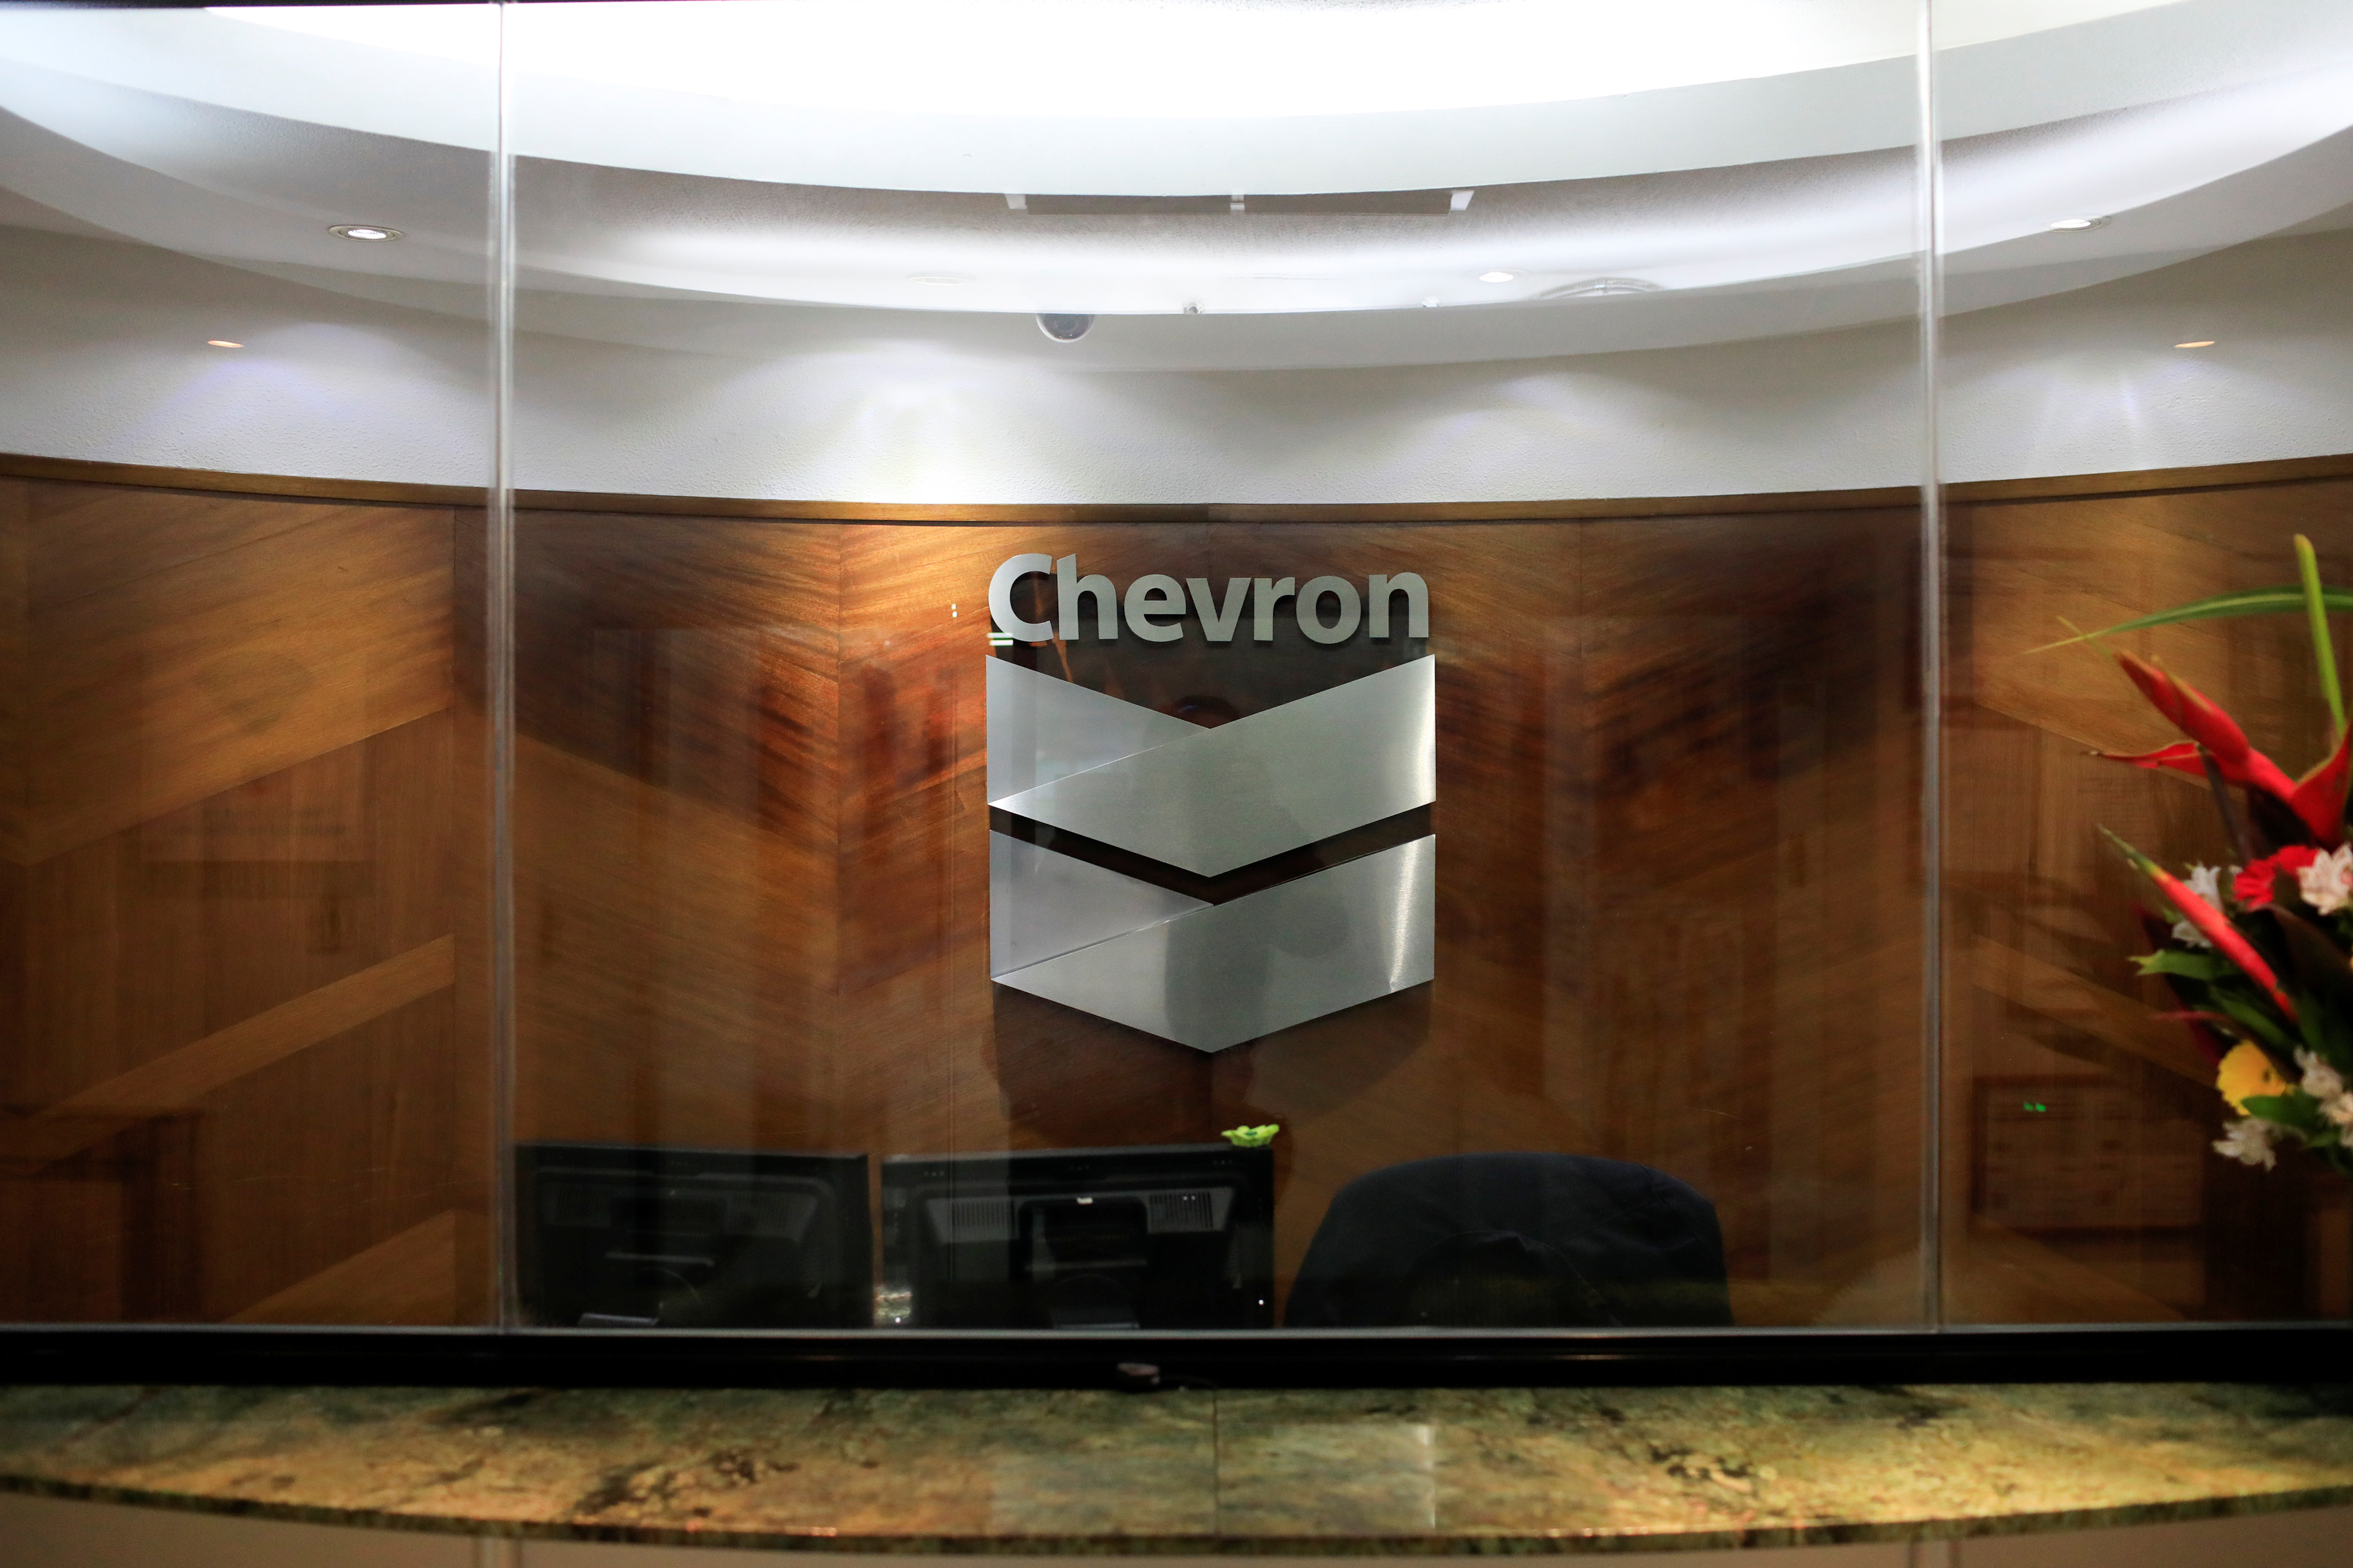 Reuters: EEUU prepara renovación de licencia de Chevron en Venezuela sin términos más amplios: fuentes